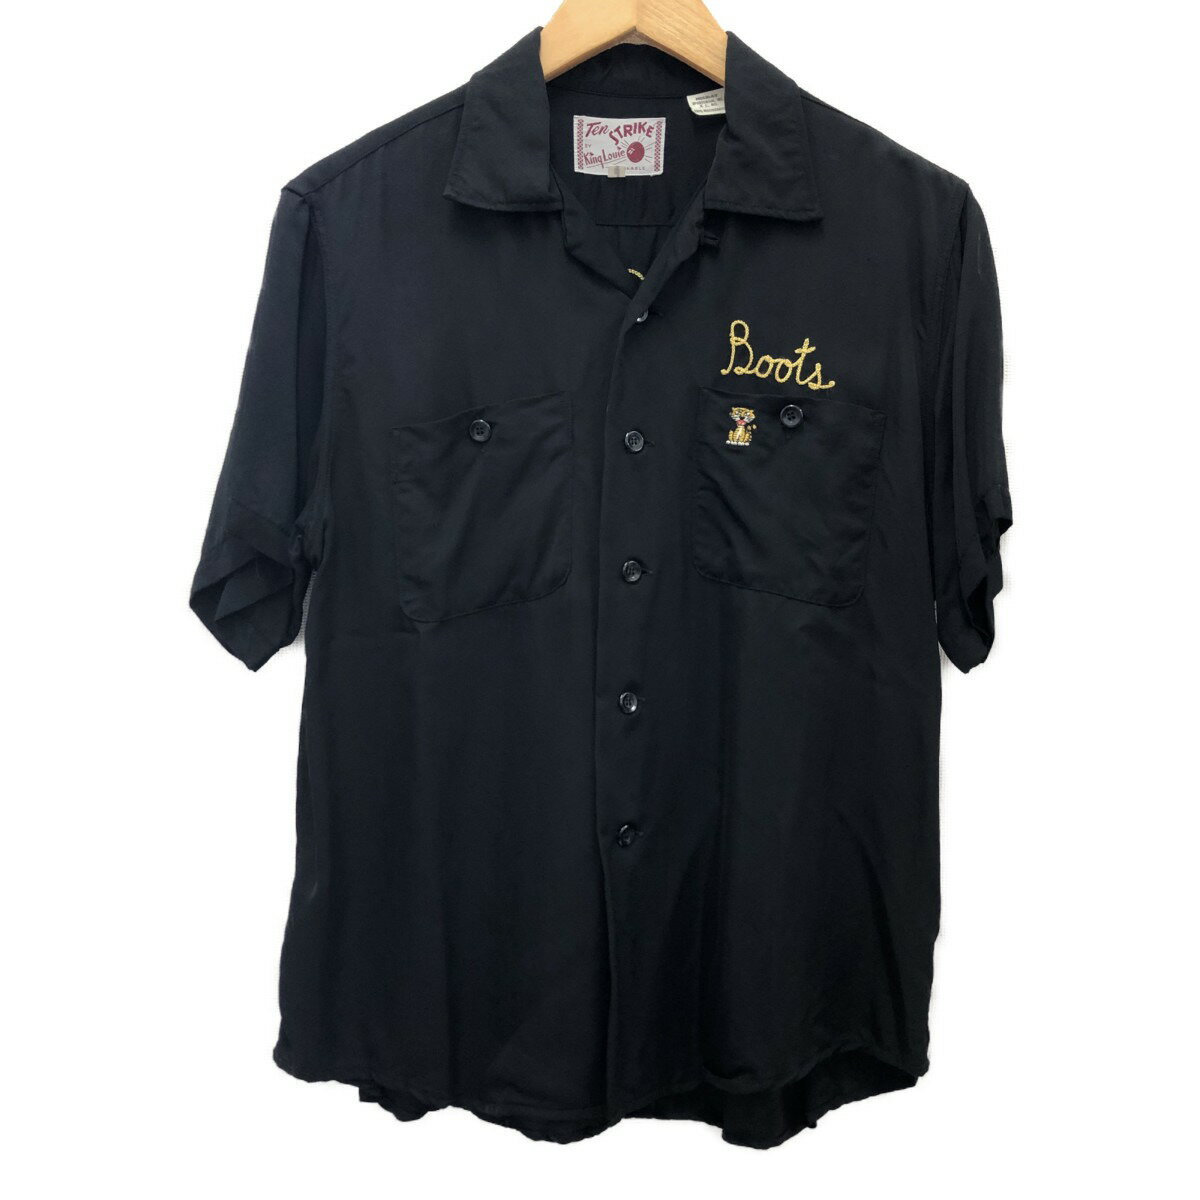 □□【中古】King Louie メンズ衣料 シャツ ボーリングシャツ SIZE S kl35447 ブラック Aランク